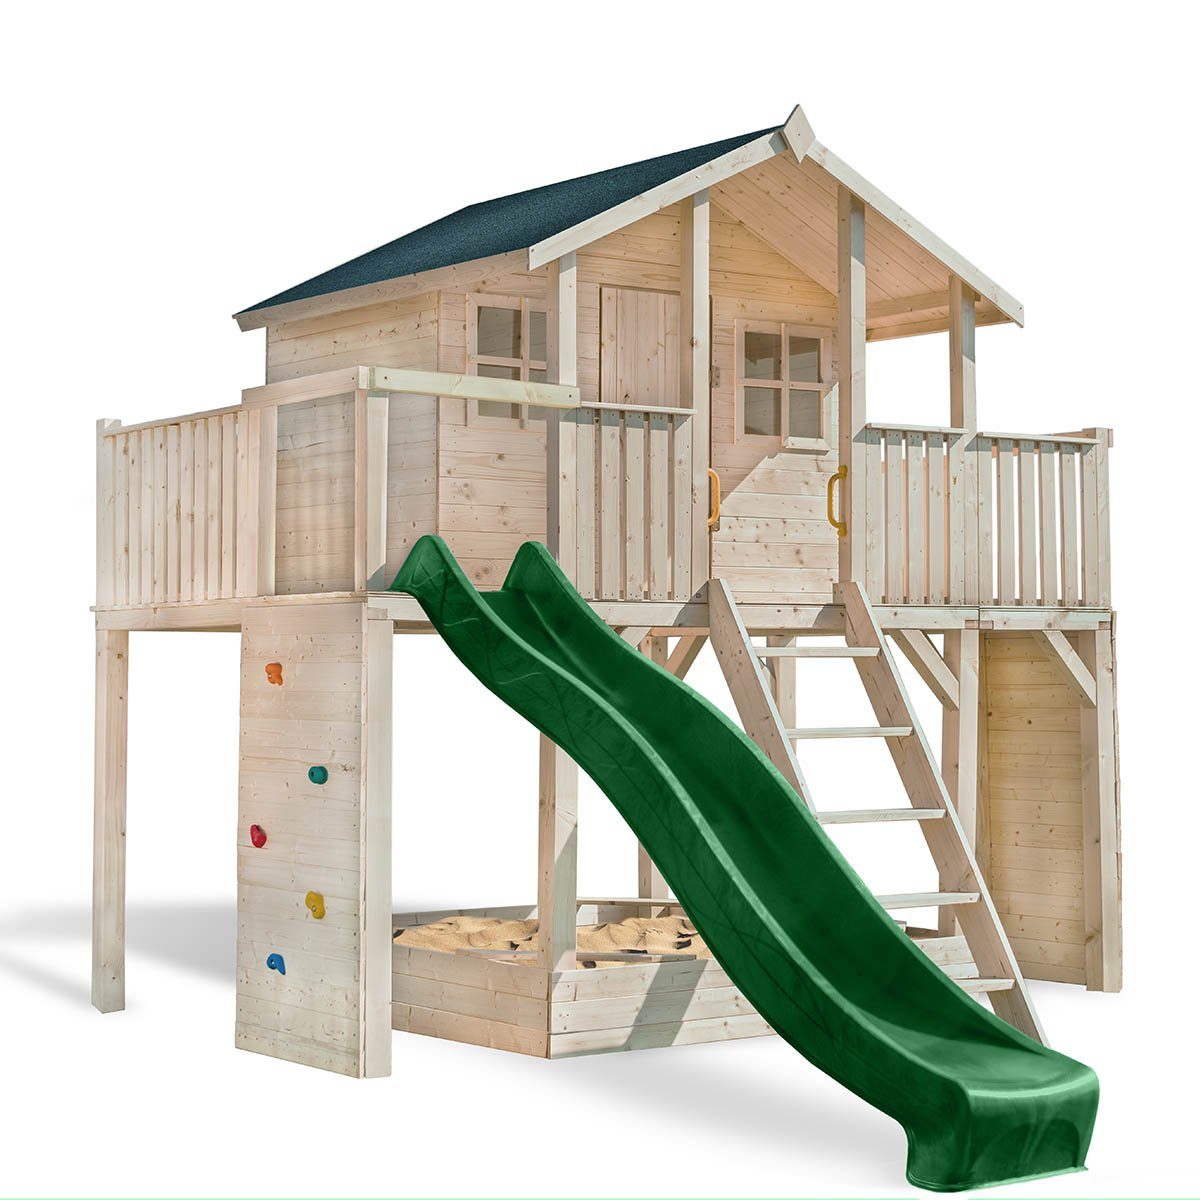 SCHEFFER Outdoor Toys Spielturm Stelzenhaus Tobi Loft, maximaler Spielwert  durch Klettern, Rutschen, Schaukel etc.